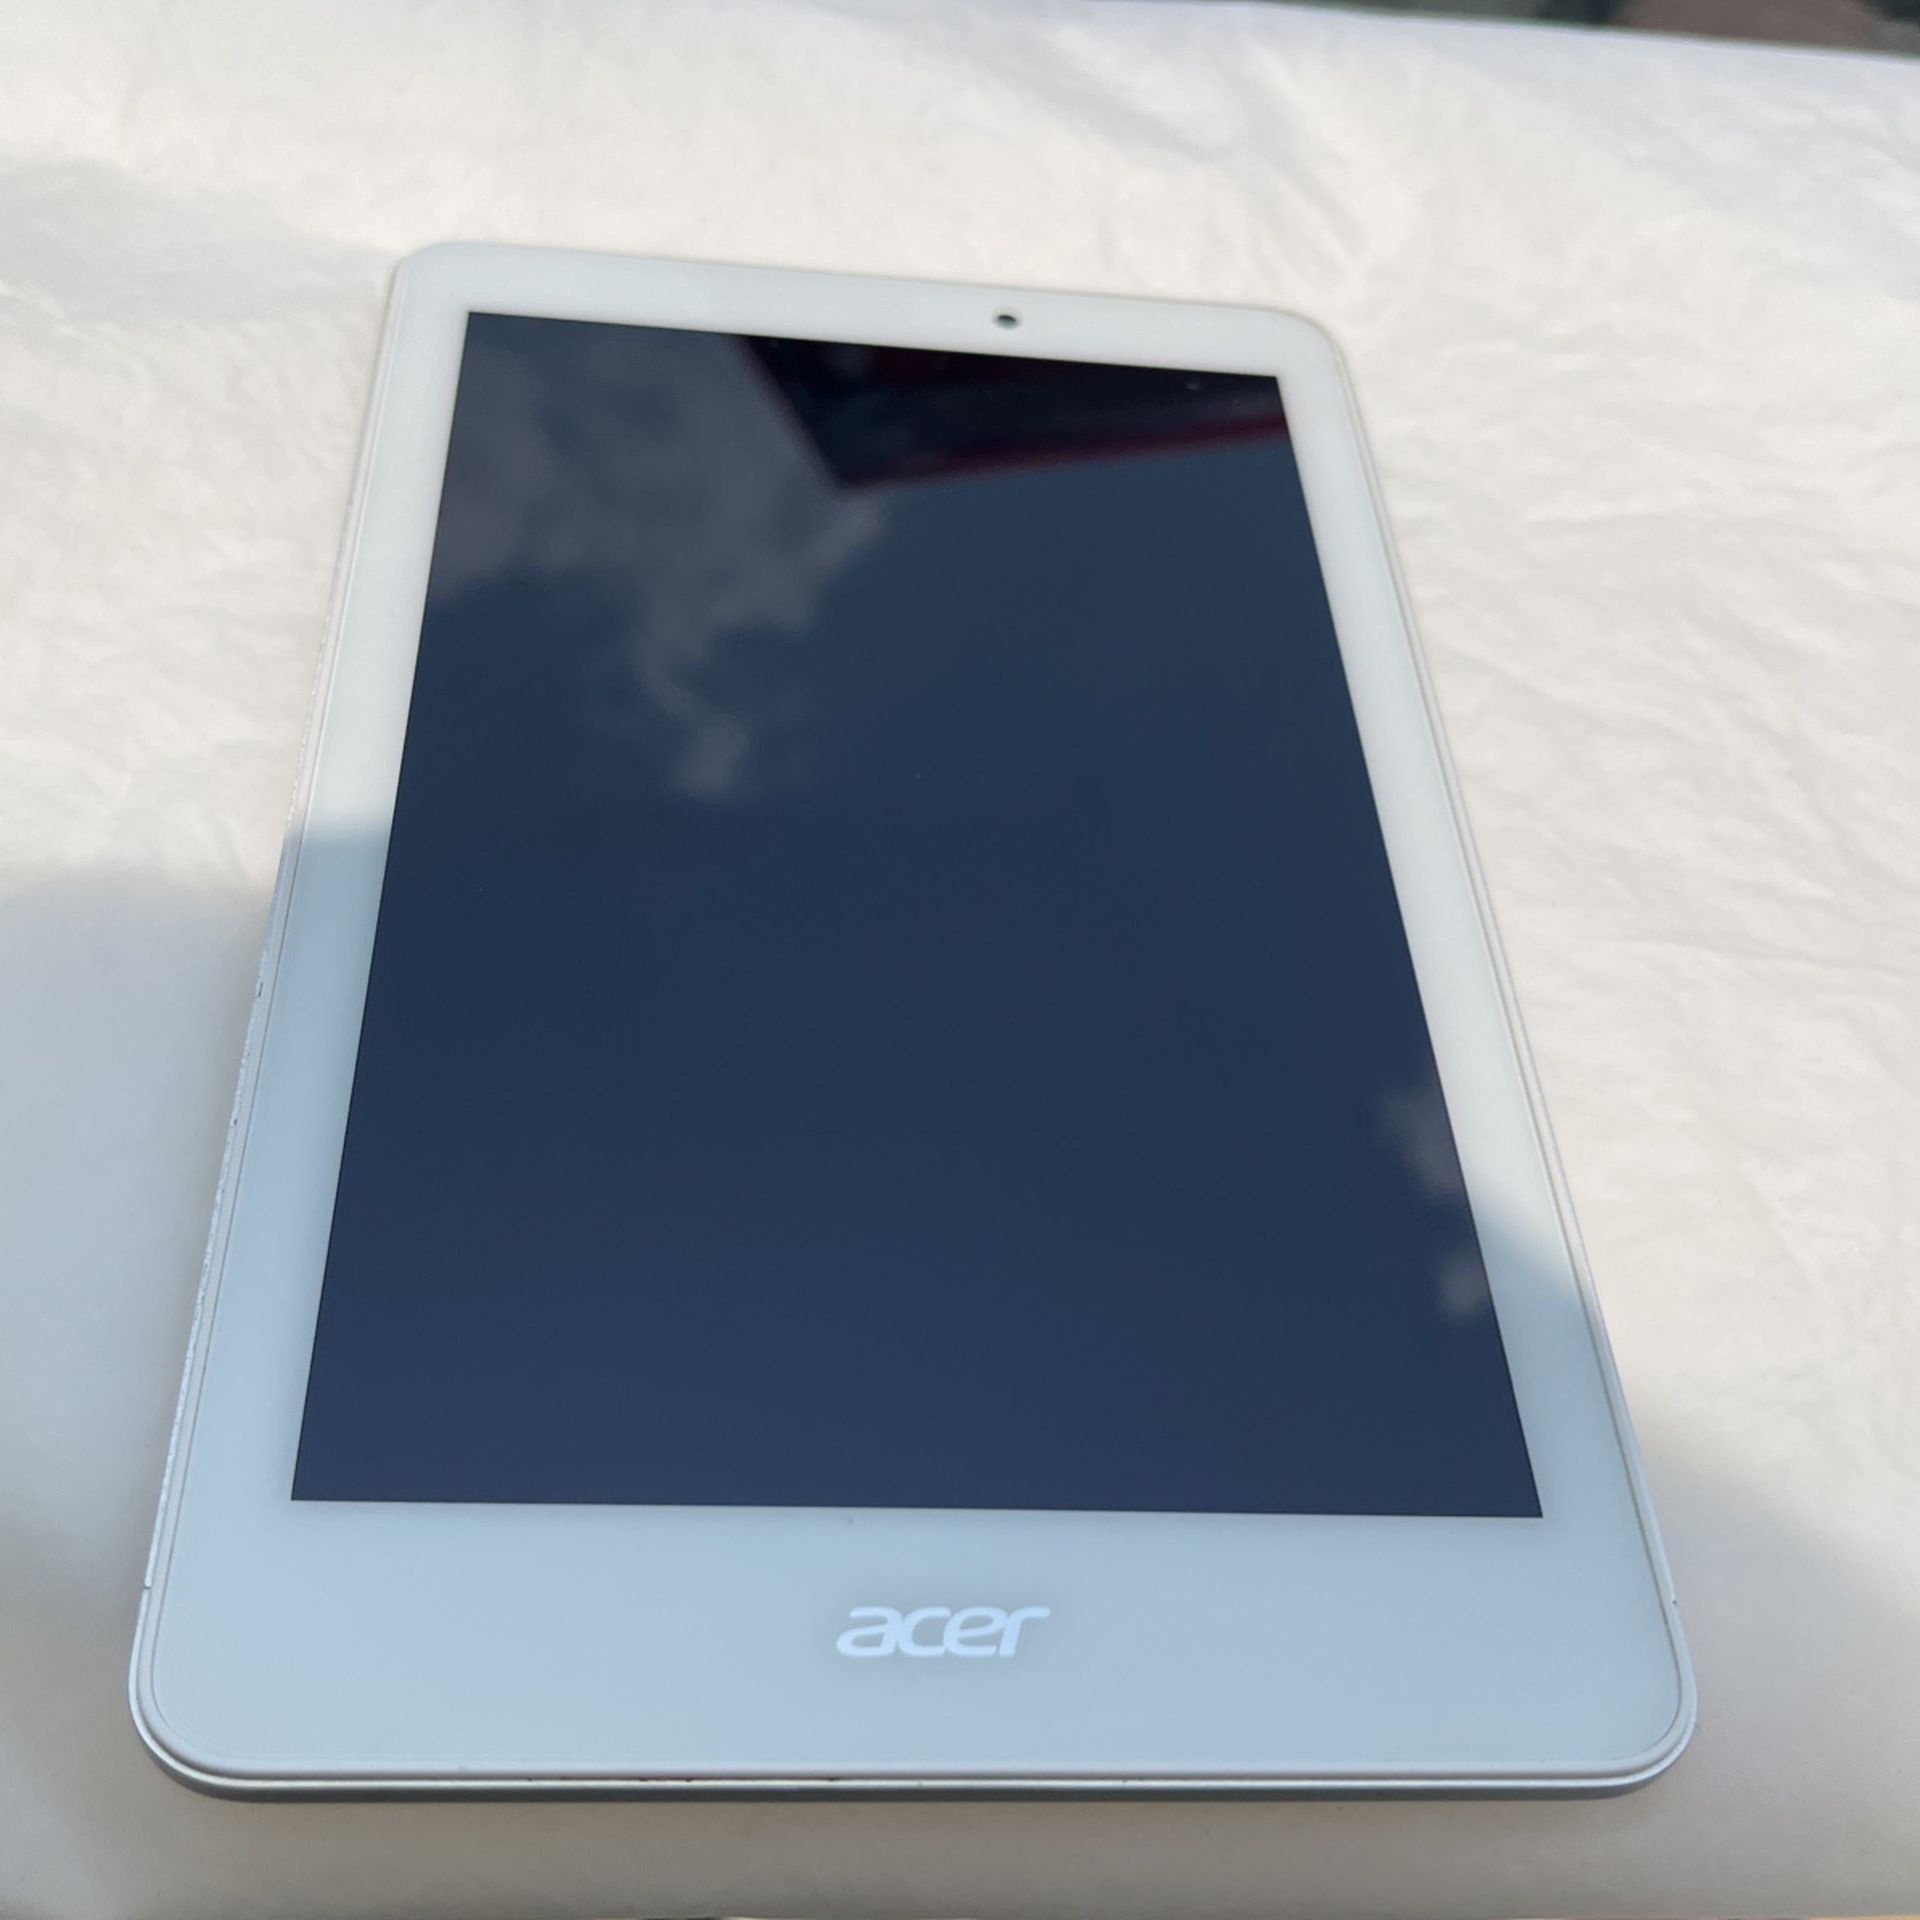 Acer Tablet $16 OBO